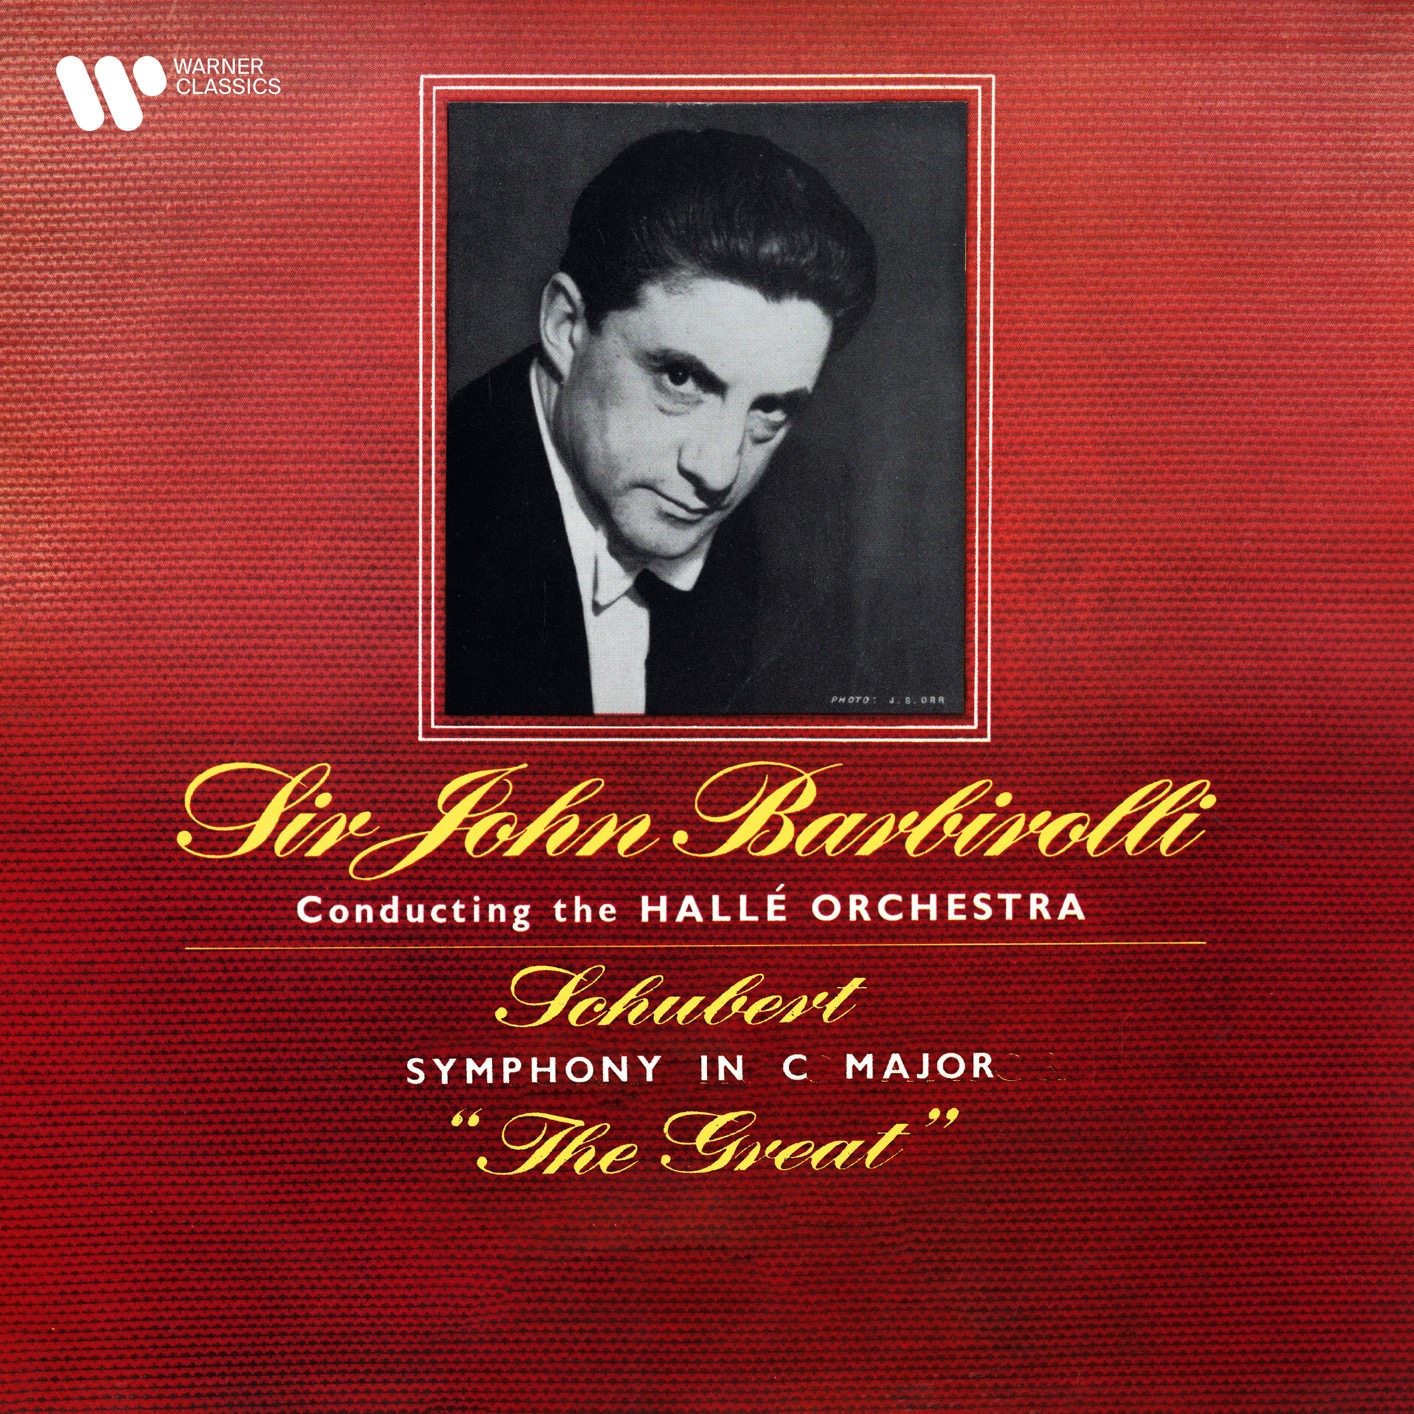 Sir John Barbirolli – Schubert: Symphony No. 9, D. 944 “The Great” (Remastered) (2021) [FLAC 24bit/192kHz]